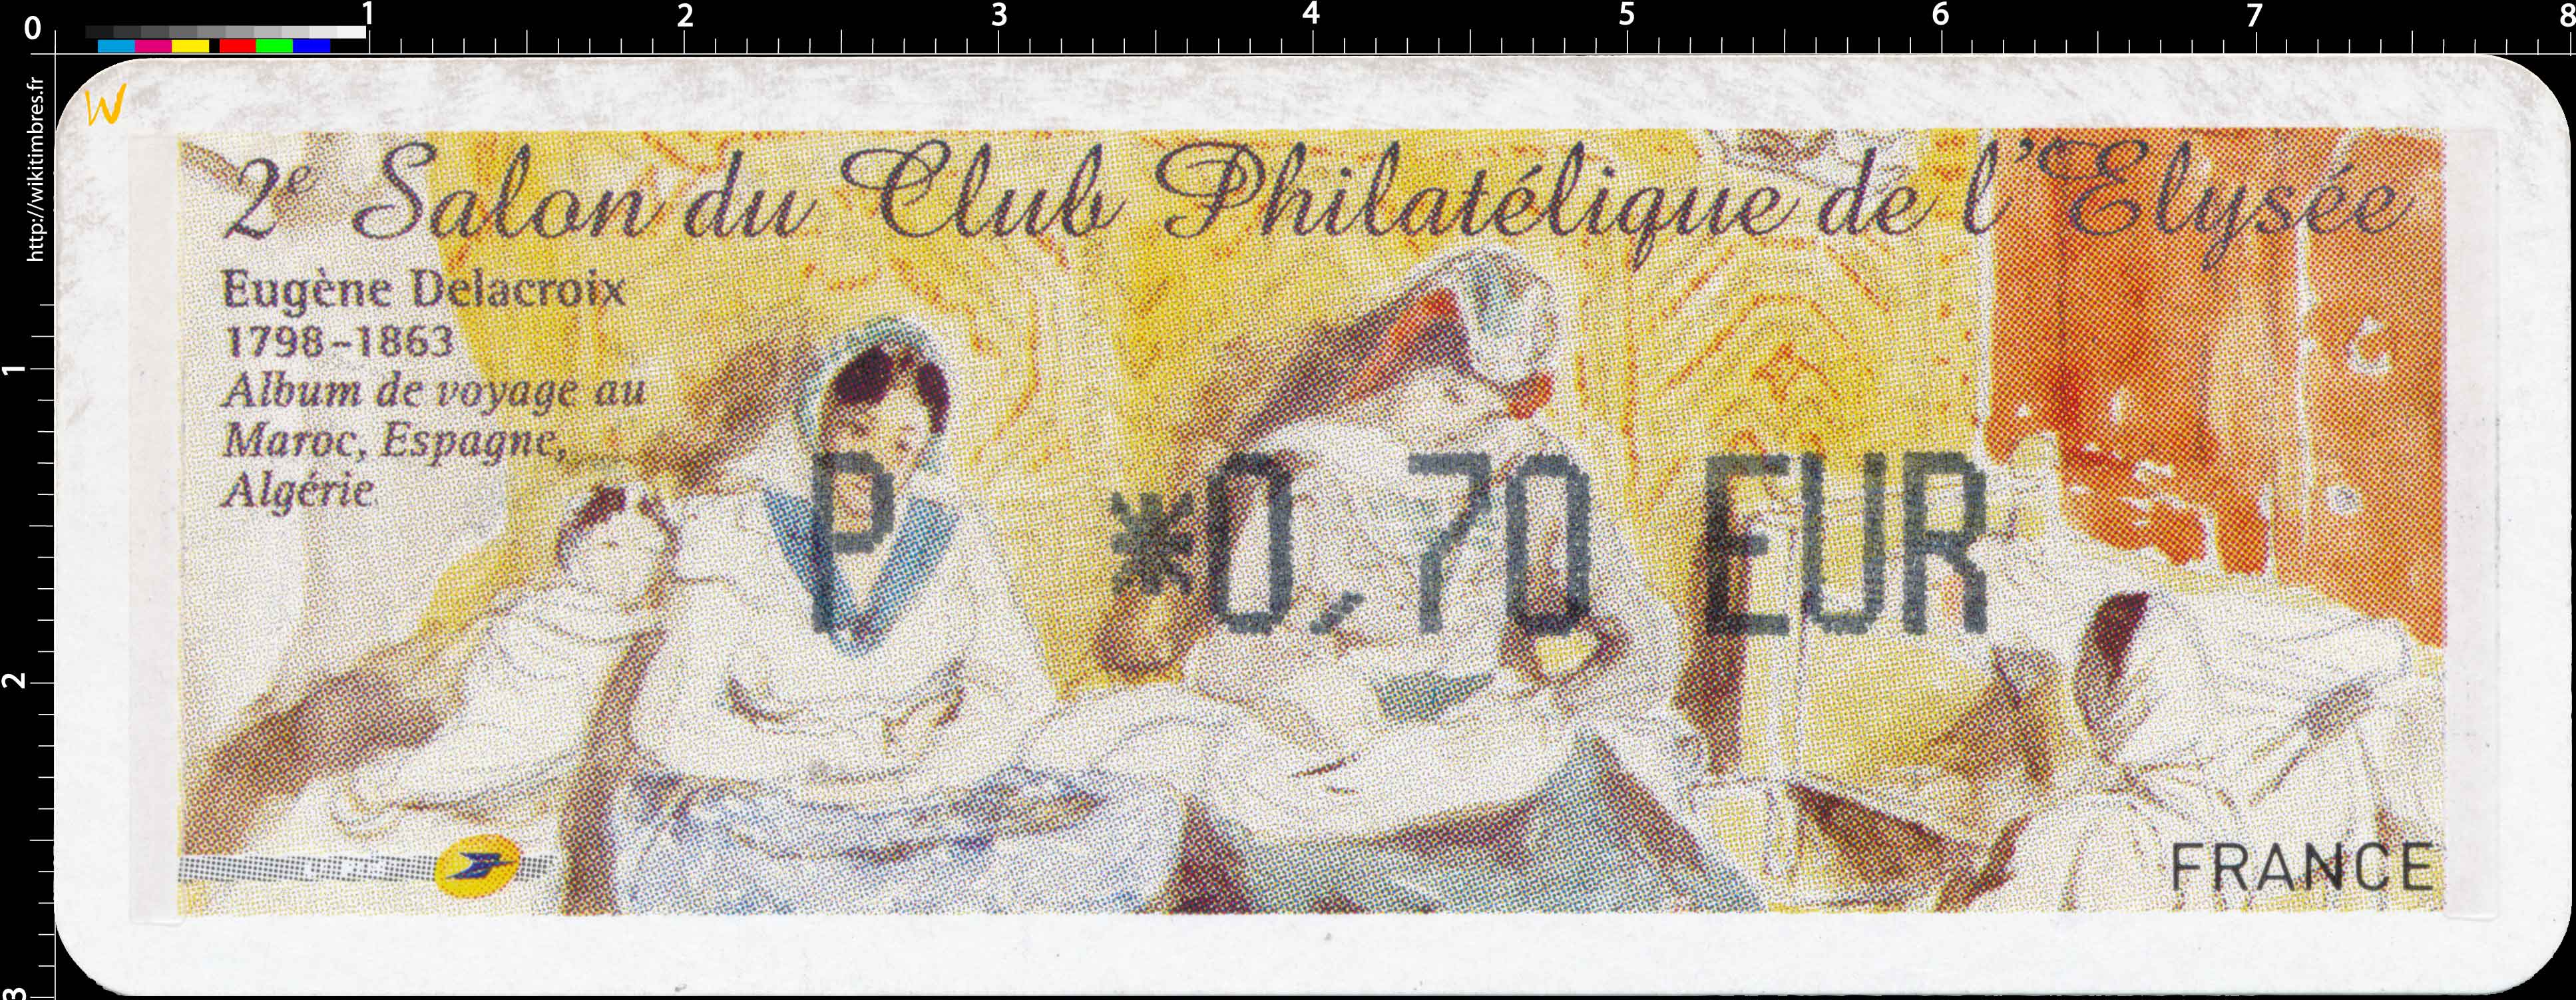 2e Salon du Club Philatélique de l'Élysée Eugène Delacroix 1798-1863